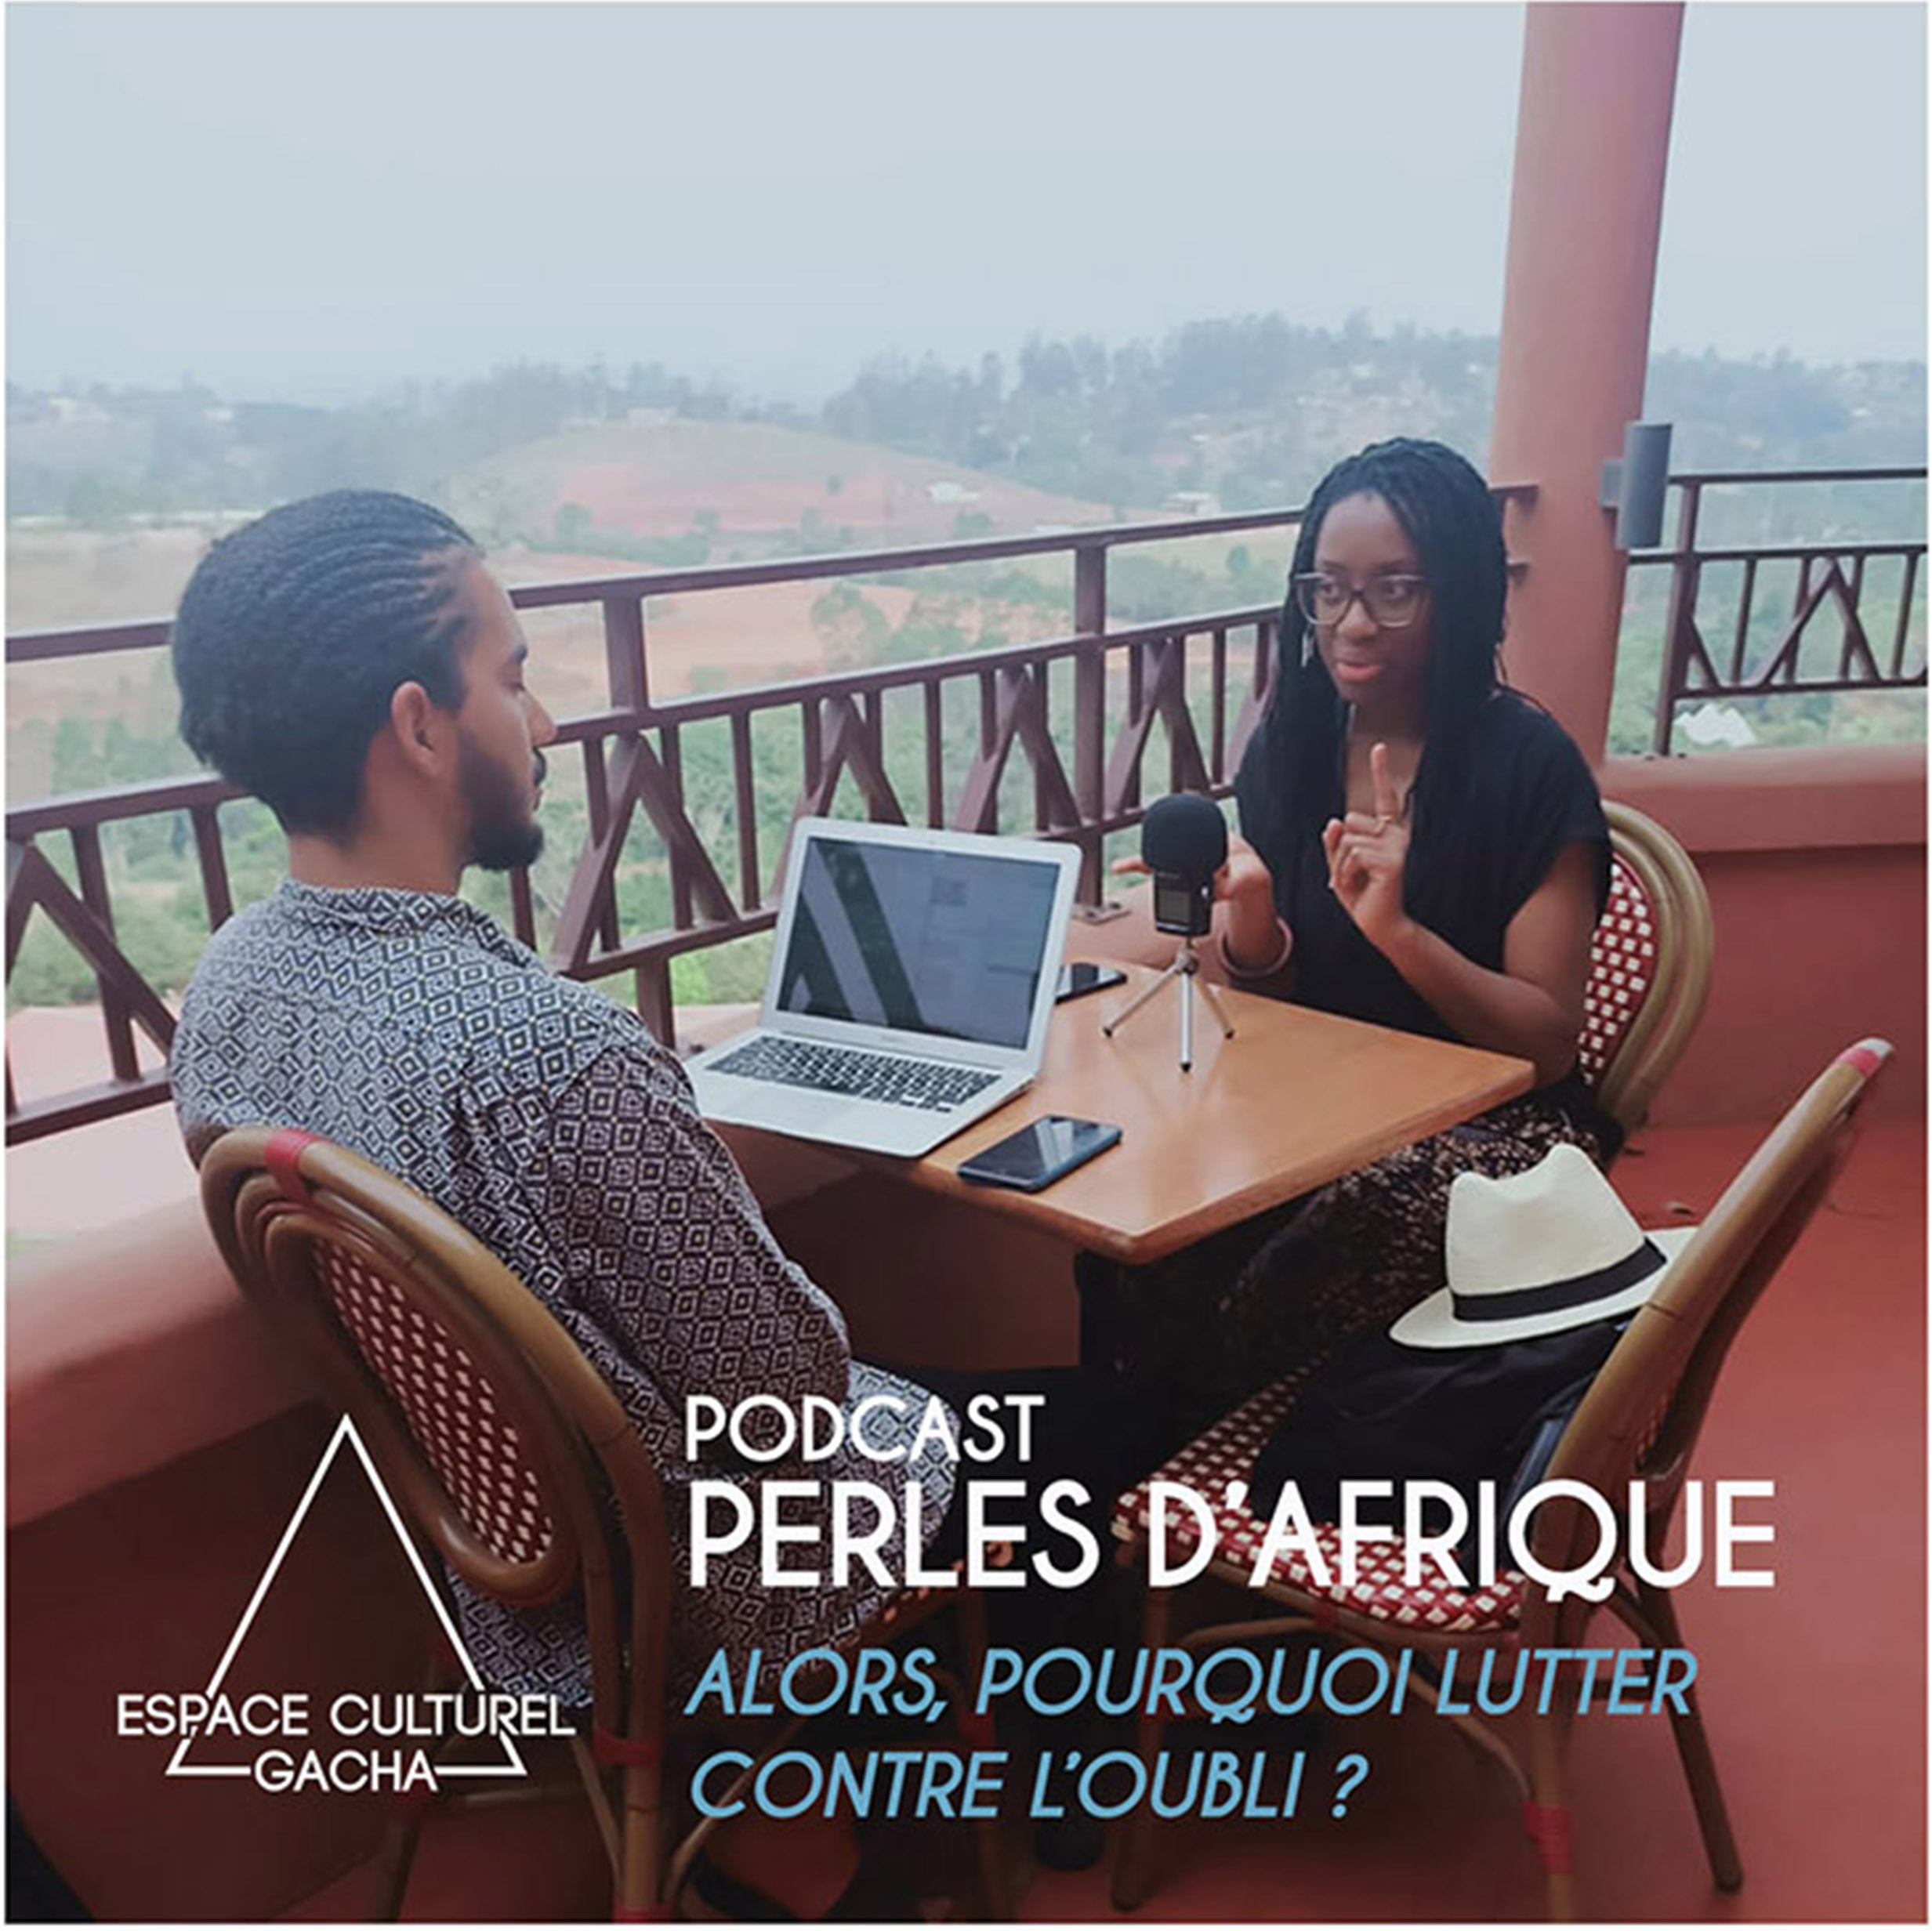 Podcast Perles d’Afrique – Alors, pourquoi lutter contre l’oubli ?